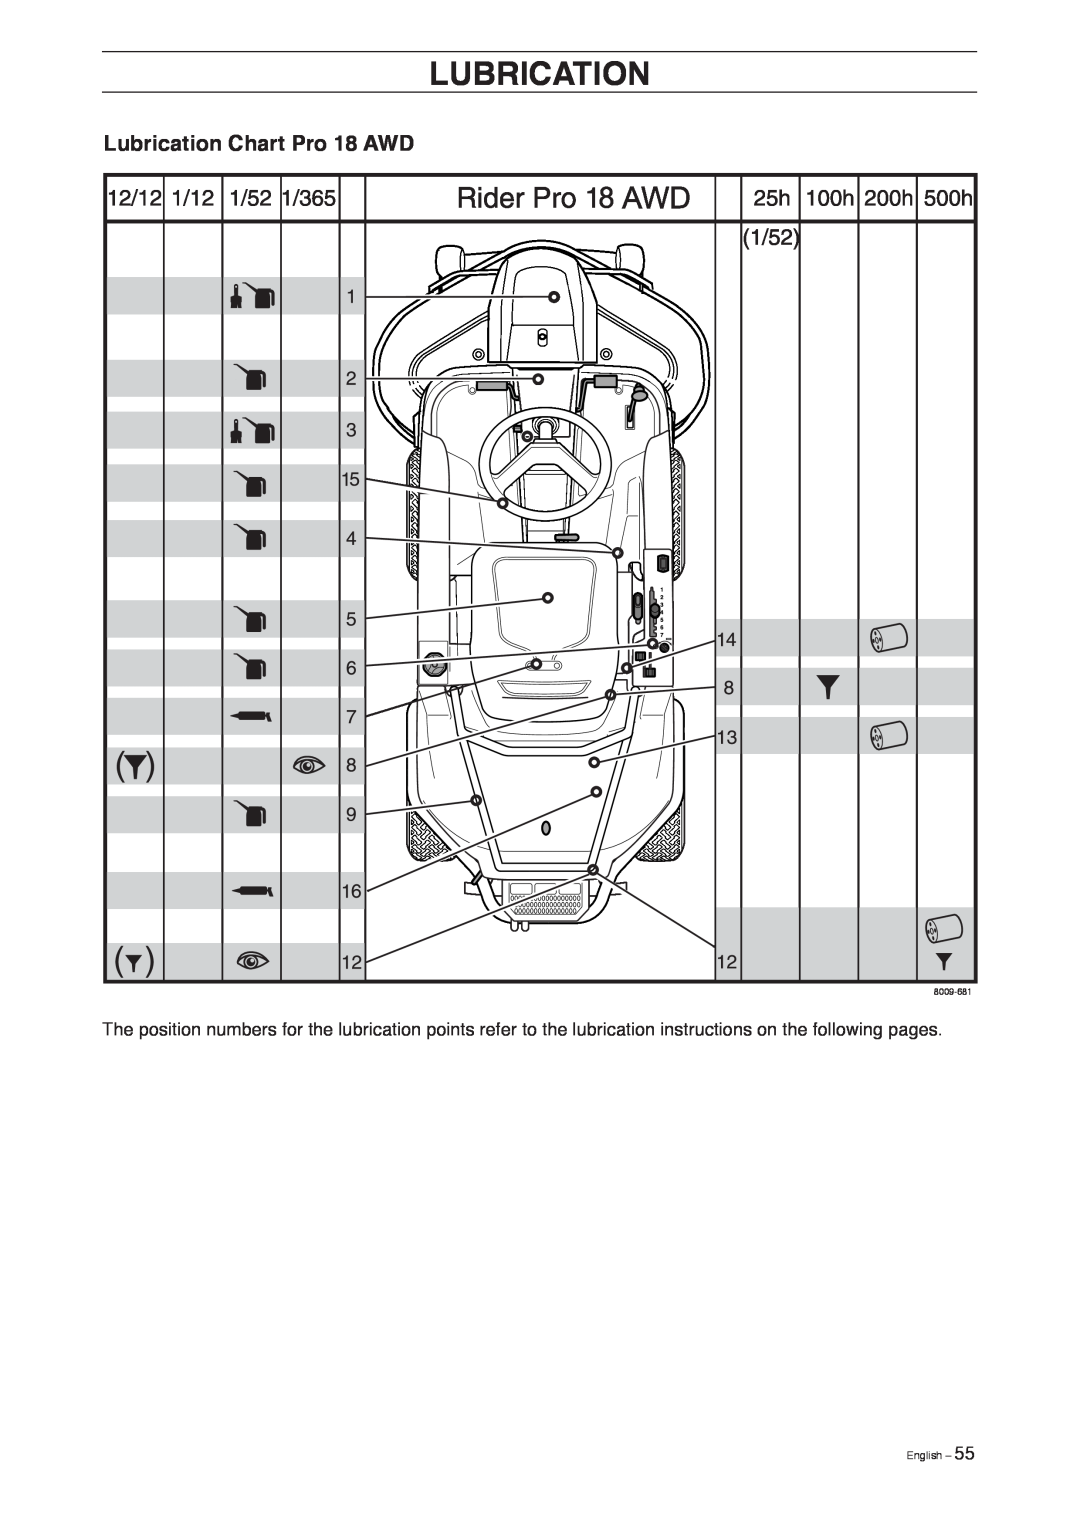 Husqvarna manual Lubrication Chart Pro 18 AWD, English, 8009-681 